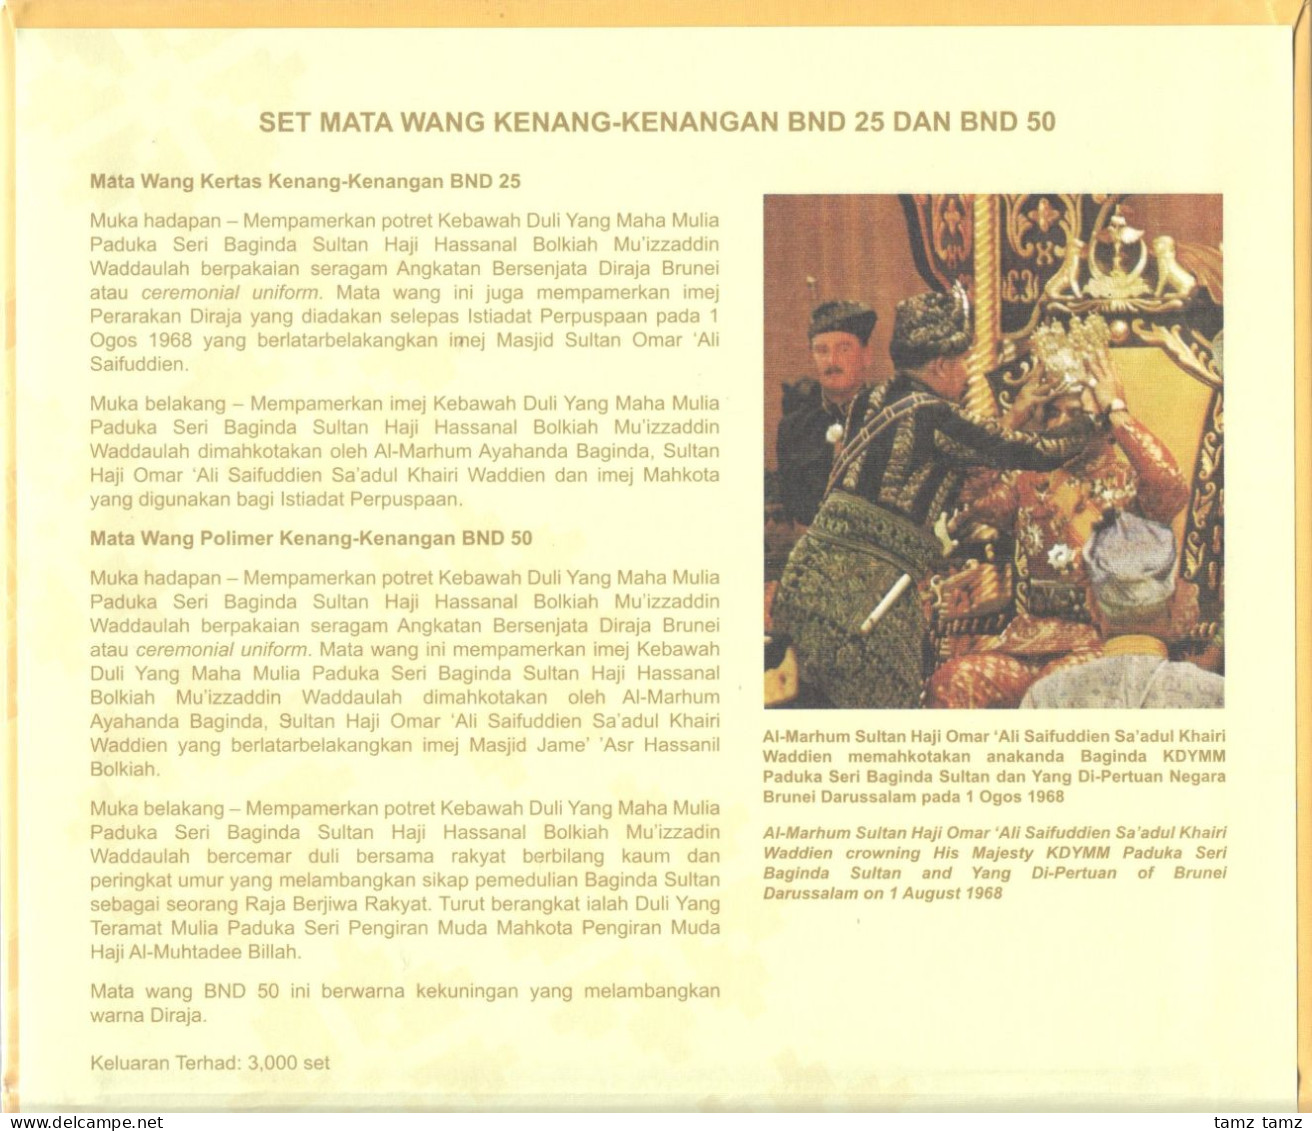 Set Brunei 25 50 Ringgit Dollars Paper & Polymer 2017 1992 + Gov. Issued Folder - Brunei